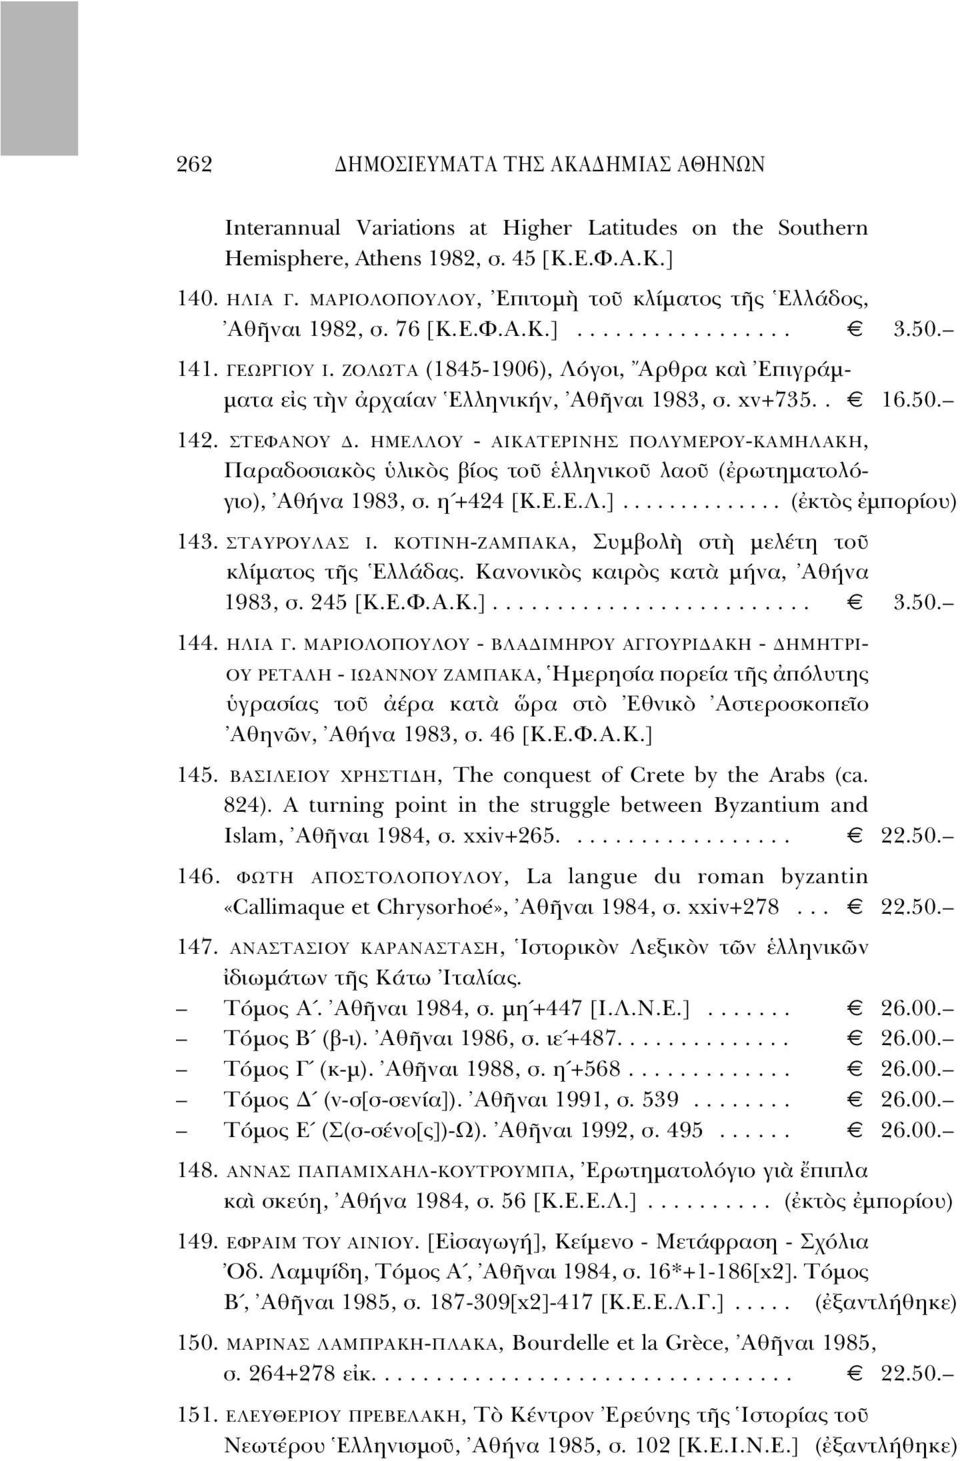 ΖΟΛΩΤΑ (1845-1906), Λ γοι, Aρθρα κα Eπιγράµ- µατα ε ς τ ν ρχαίαν Eλληνικήν, Aθ ναι 1983, σ. xv+735.. 16.50. 142. ΣΤΕΦΑΝΟΥ.